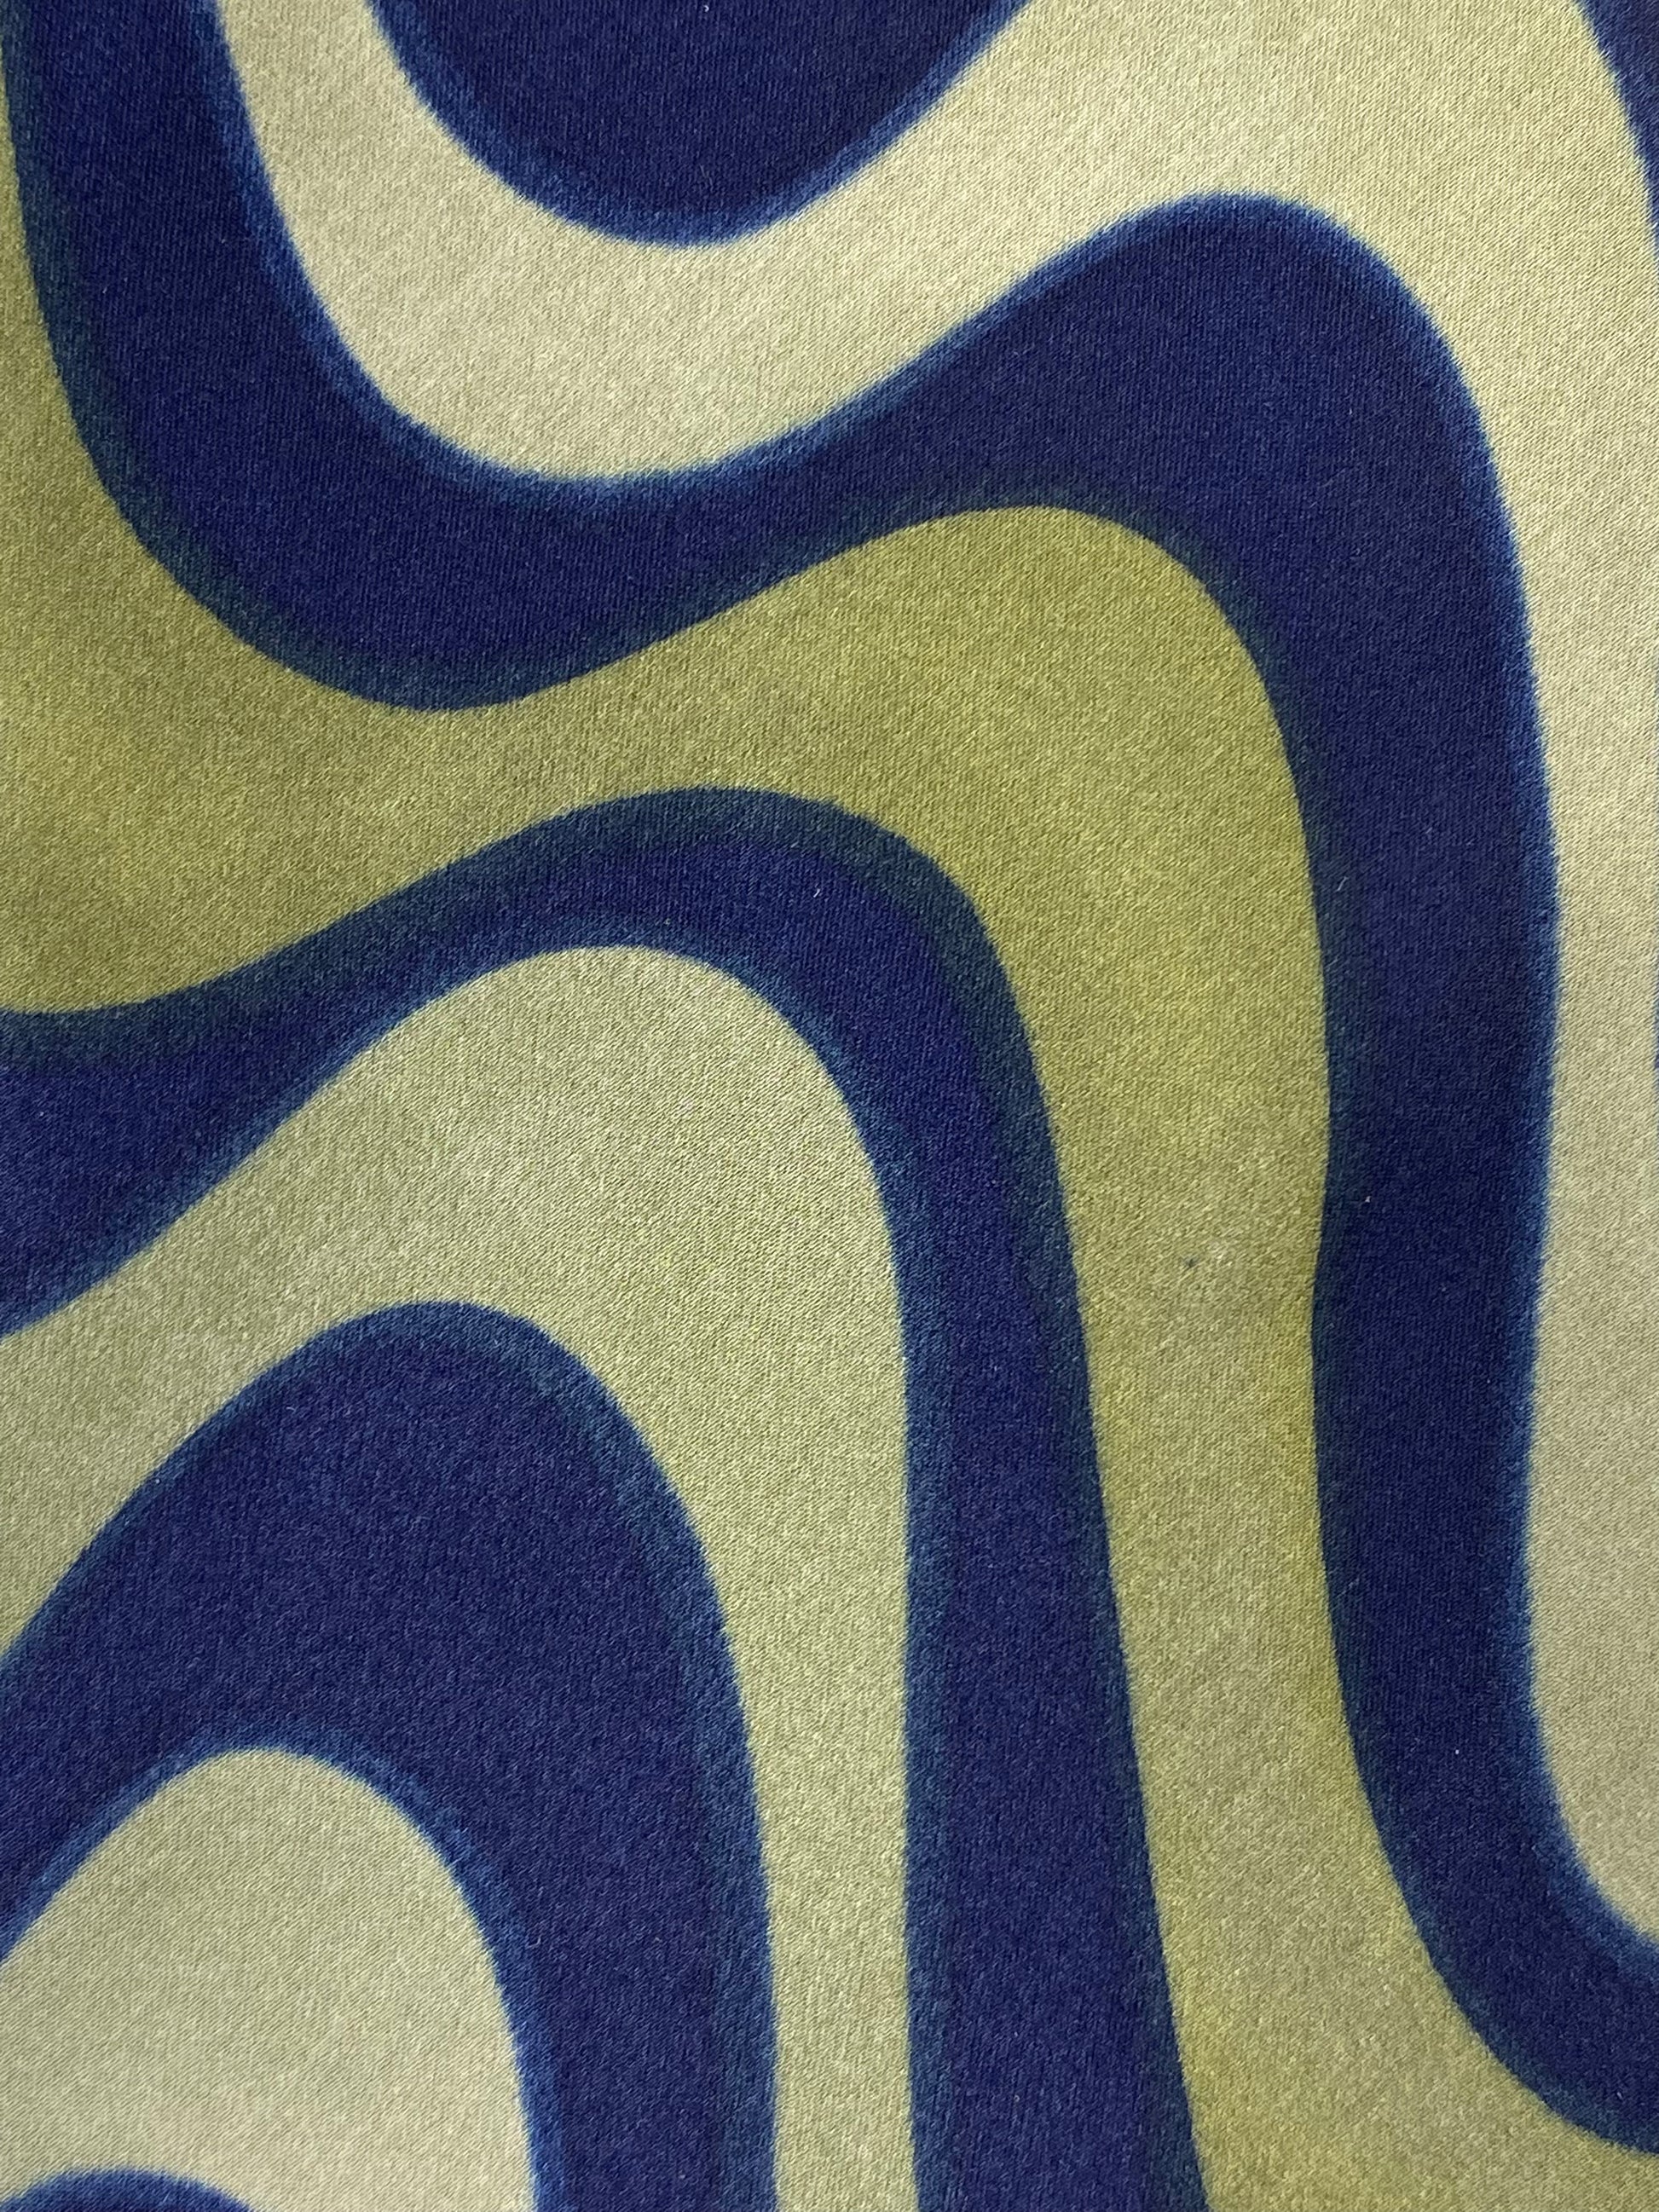 Close-up detail of: 90s Deadstock Silk Necktie, Men's Vintage Blue Green Wave Pattern Tie, NOS